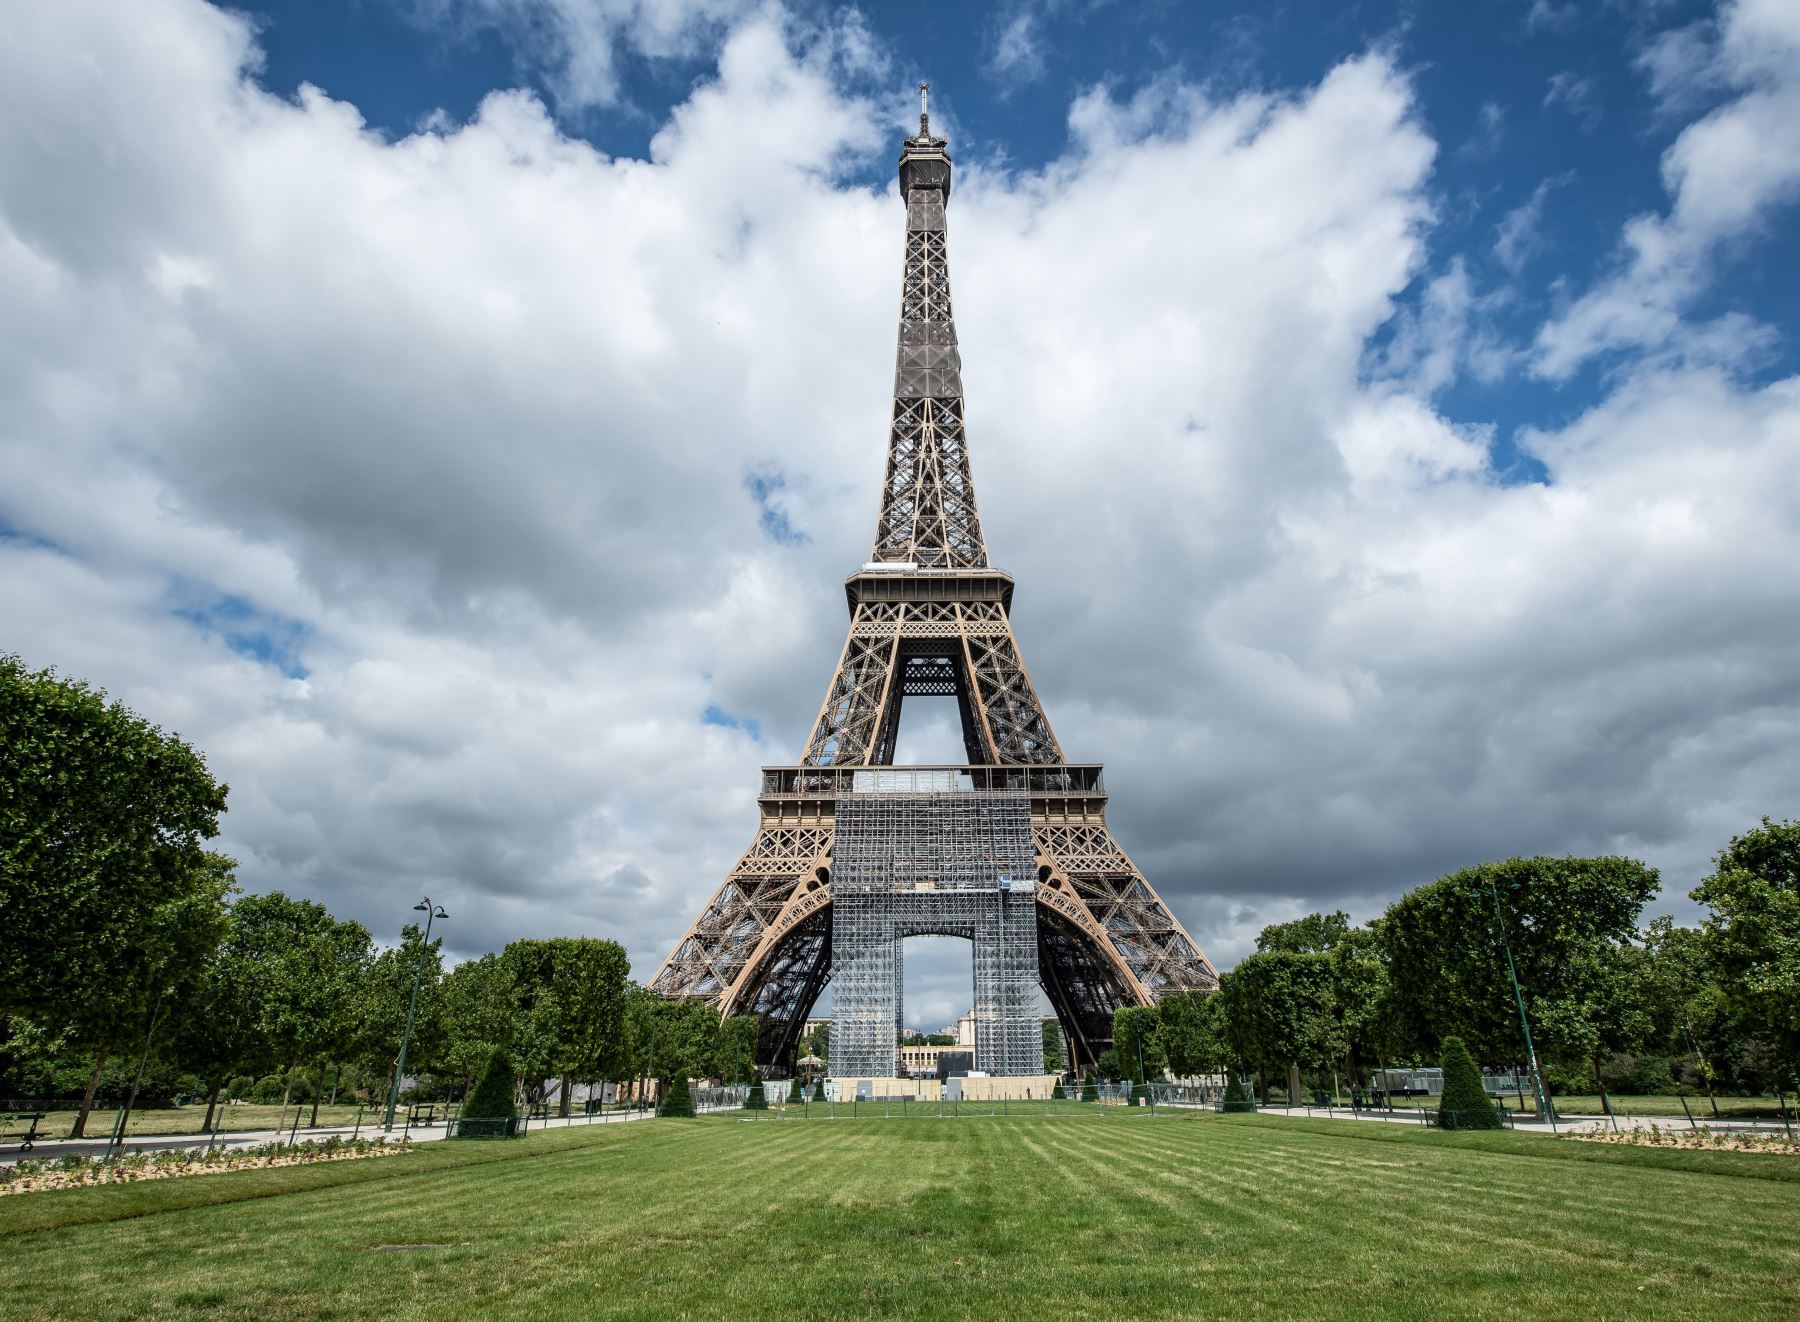 La torre Eiffel reabrió sus puertas a los turistas tras huelga